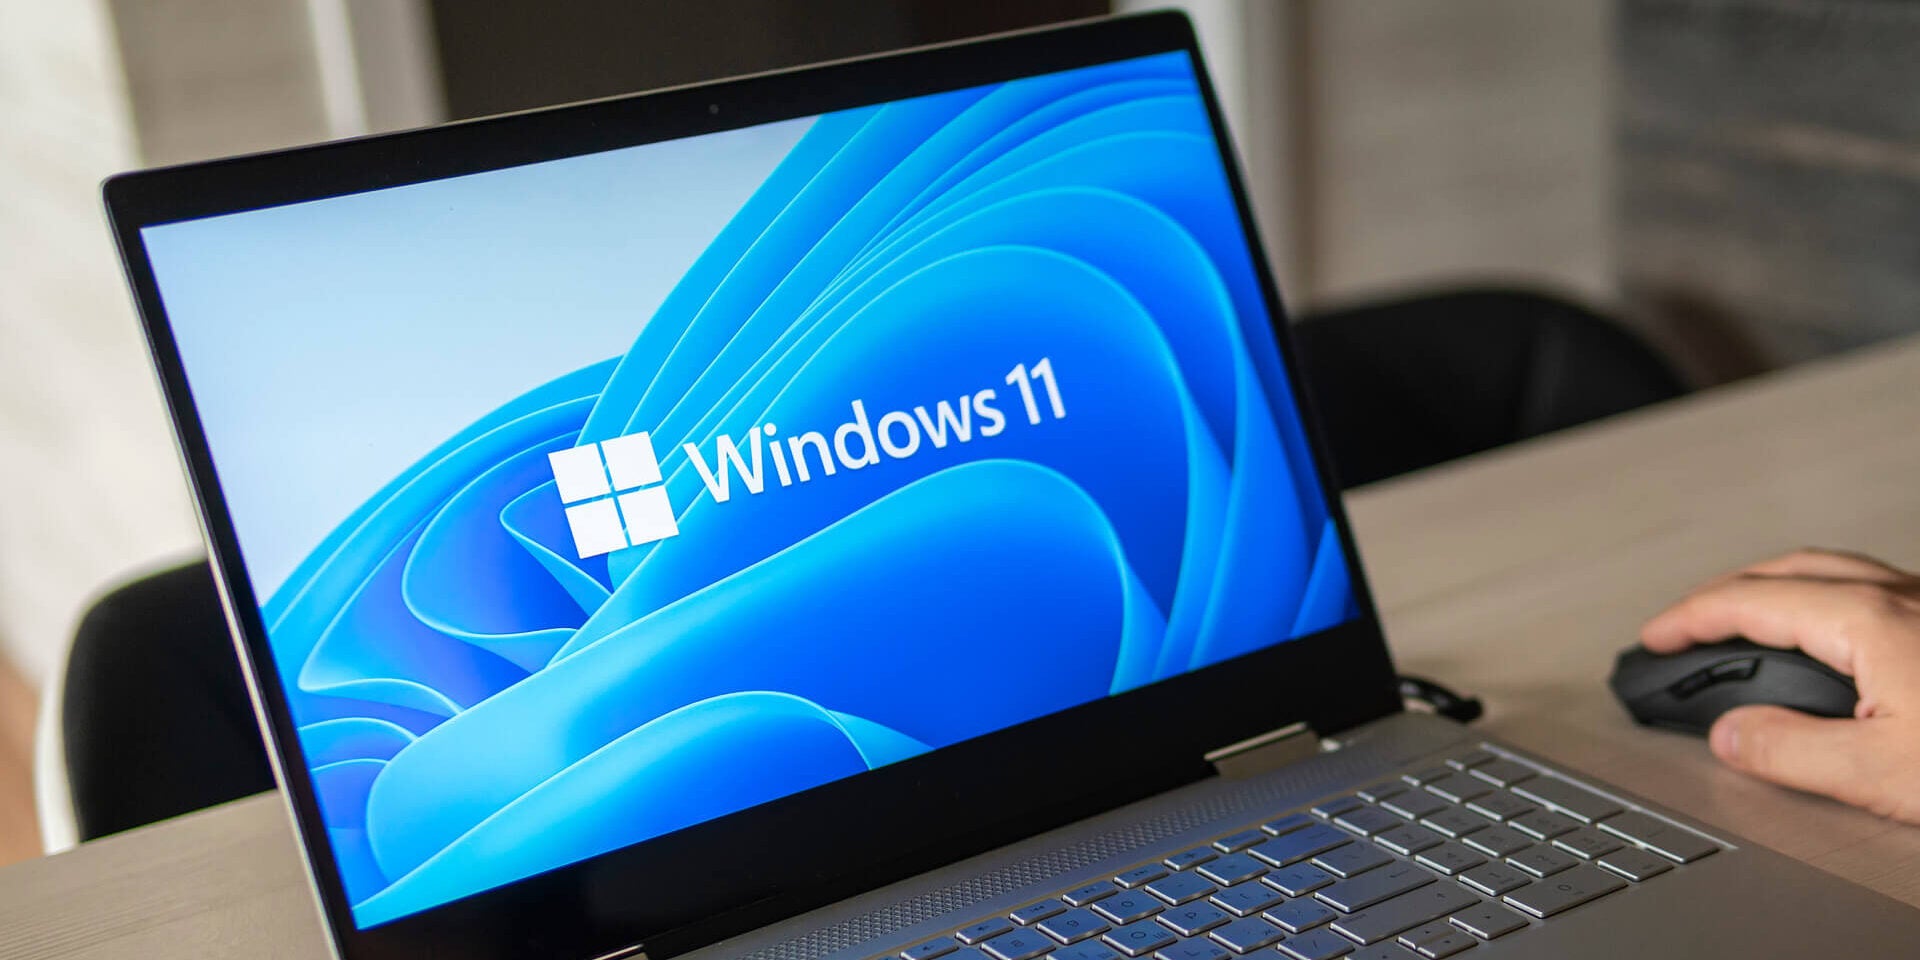 仕事環境で使用されているラップトップ画面で実行されている Microsoft Windows 11 のロゴ